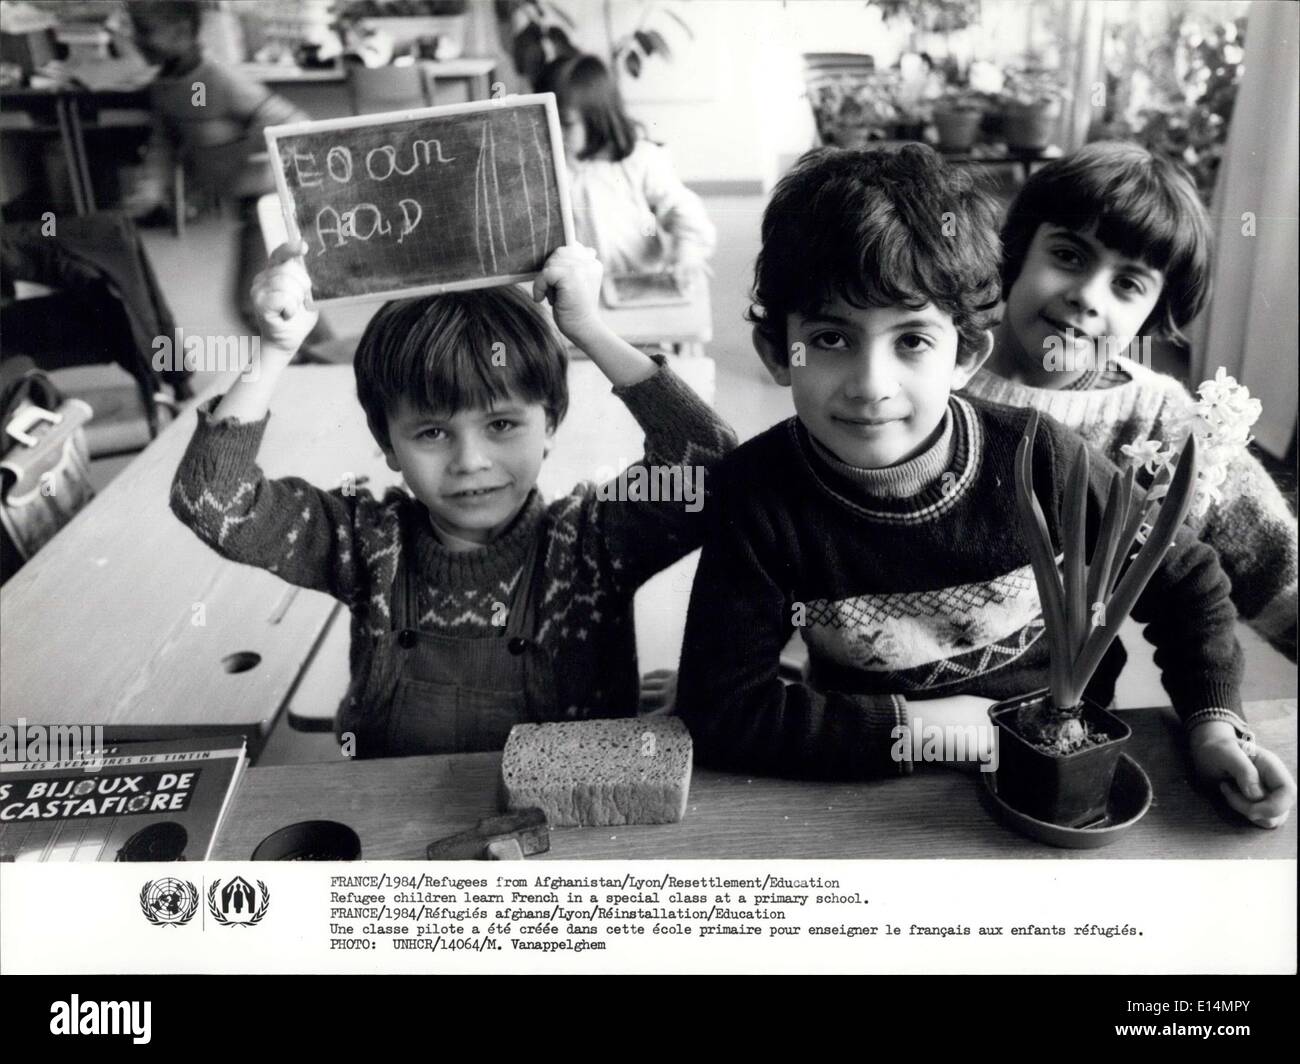 Apr. 05, 2012 - Francia/1984/rifugiati dell Afghanistan/Lione/il reinsediamento/istruzione i bambini rifugiati - Imparare il francese in una classe speciale in una scuola primaria. Foto Stock